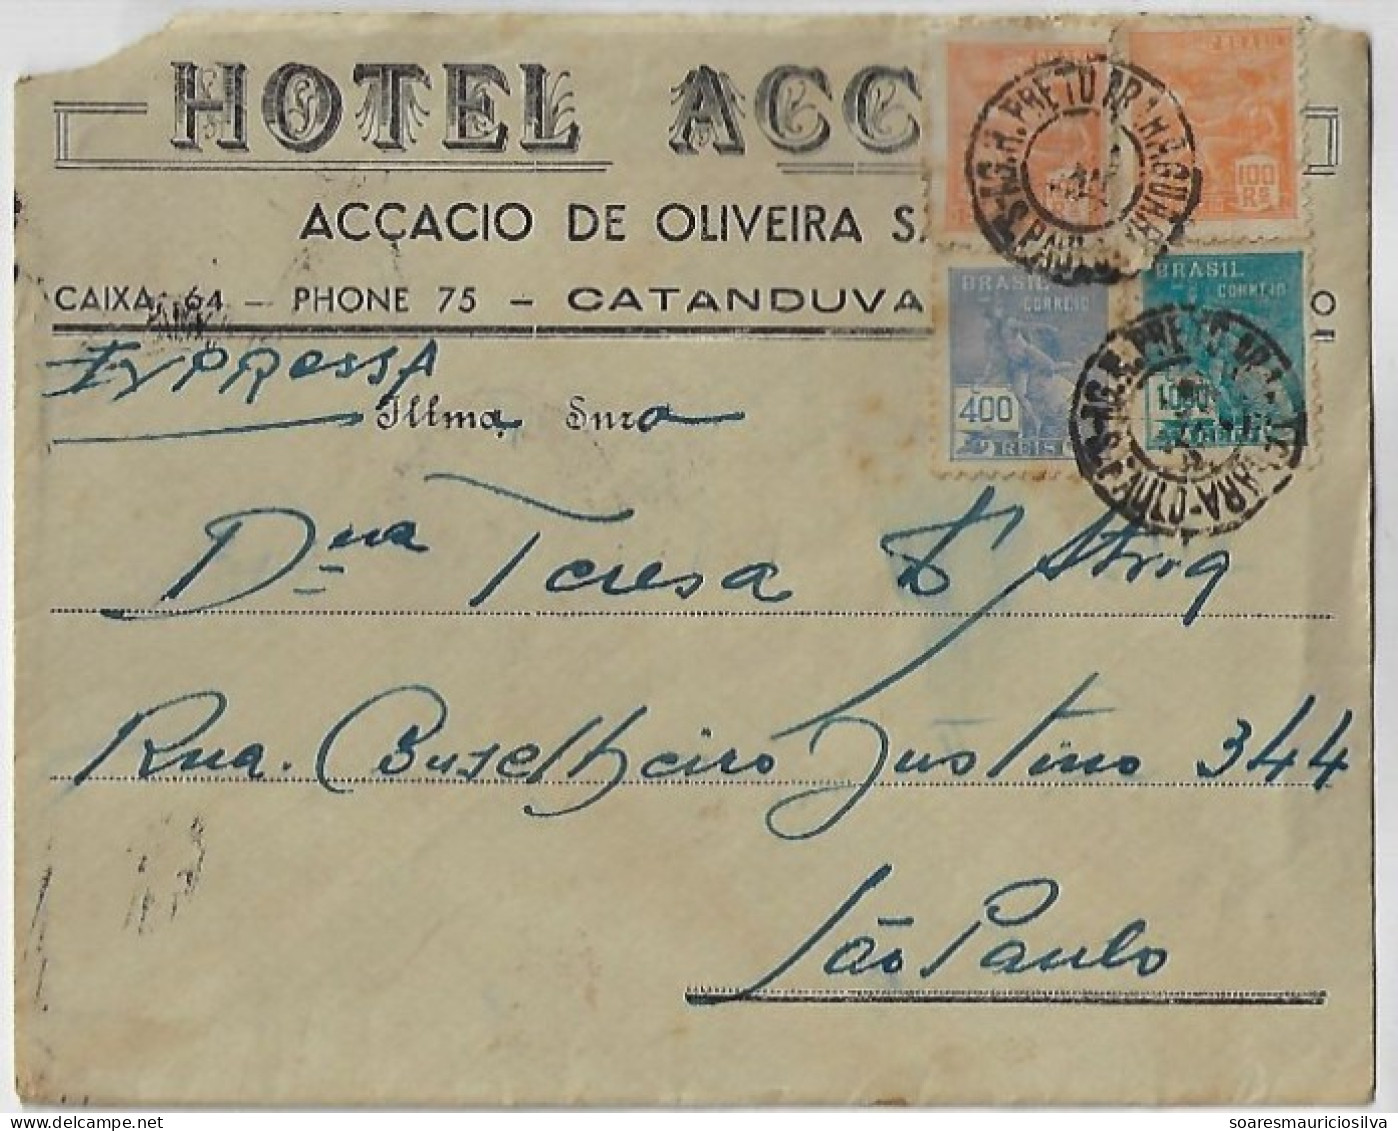 Brazil 1941 Accacio Hotel Express Cover From Catanduvas To São Paulo Railway Cancel Rio Preto X Araraquara 1,600 Réis - Storia Postale